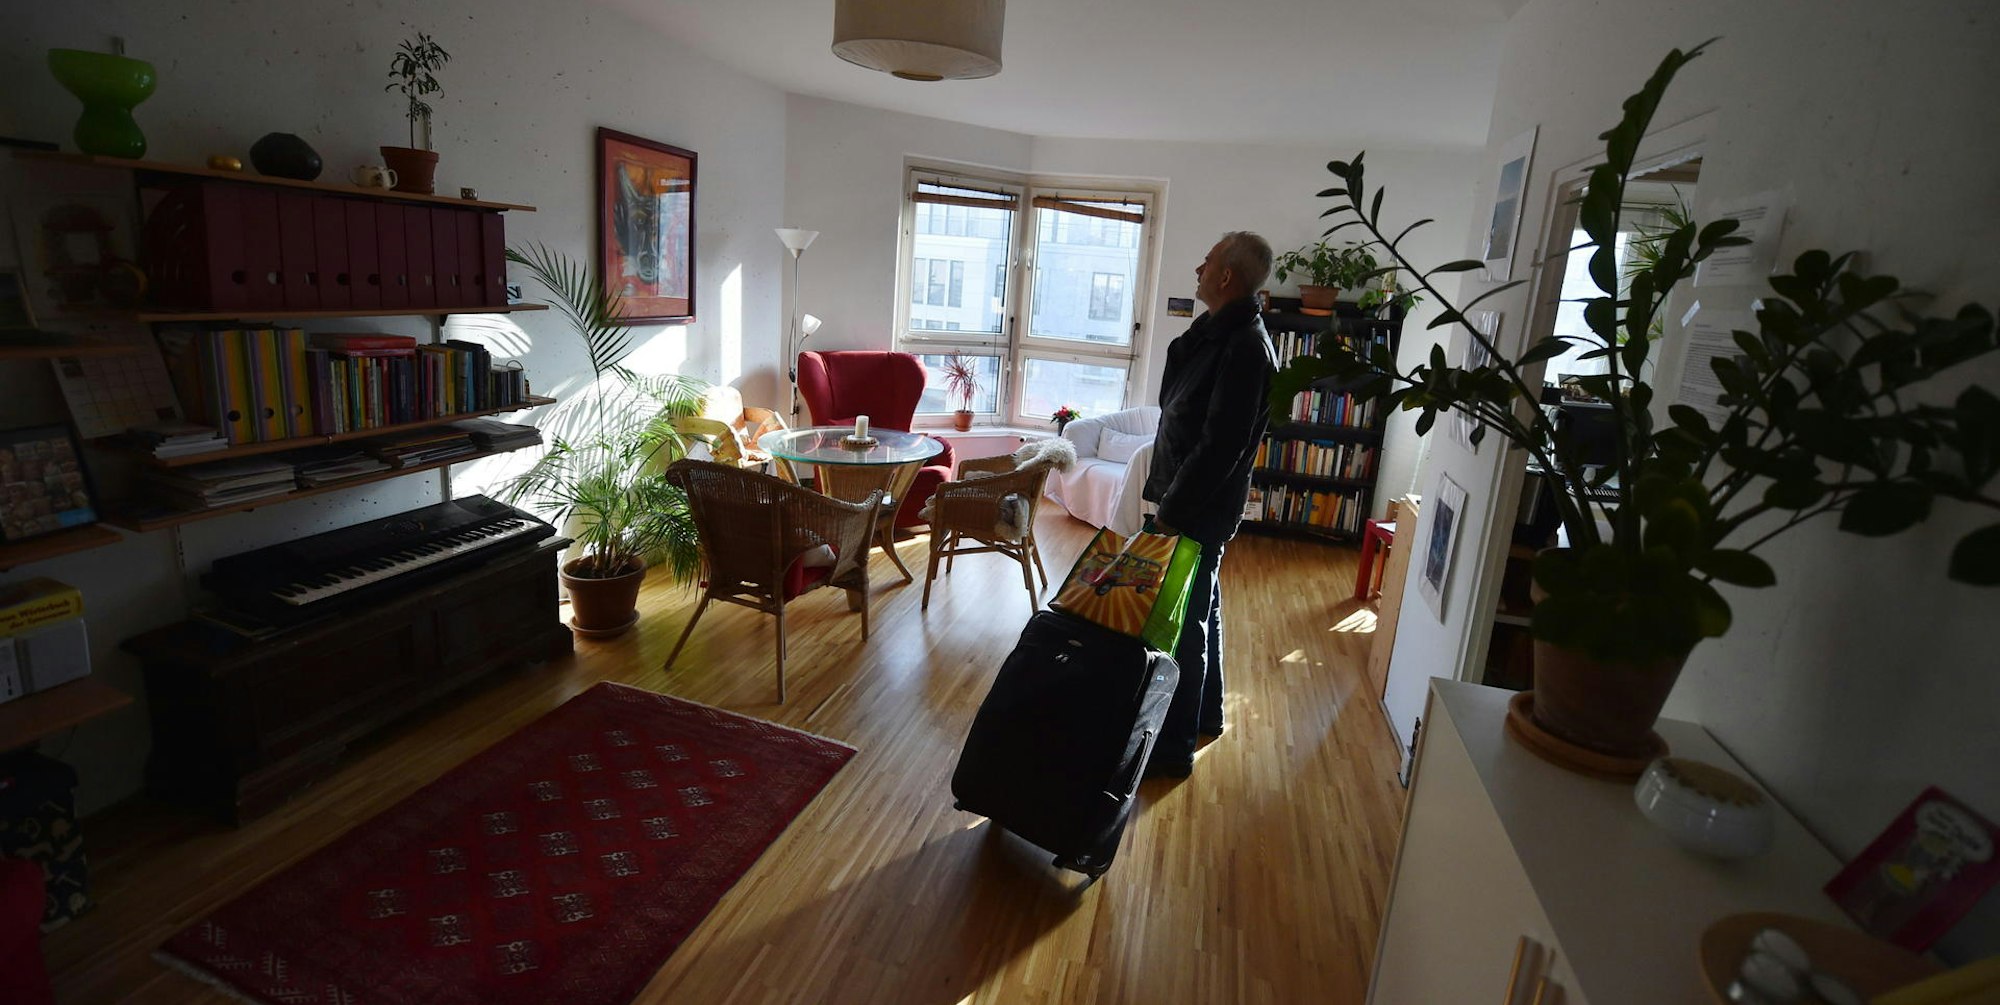 Privatwohnung statt Hotel – auch in Köln buchen immer mehr Reisende ihre Unterkünfte über Airbnb und Co. (Symbolbild)